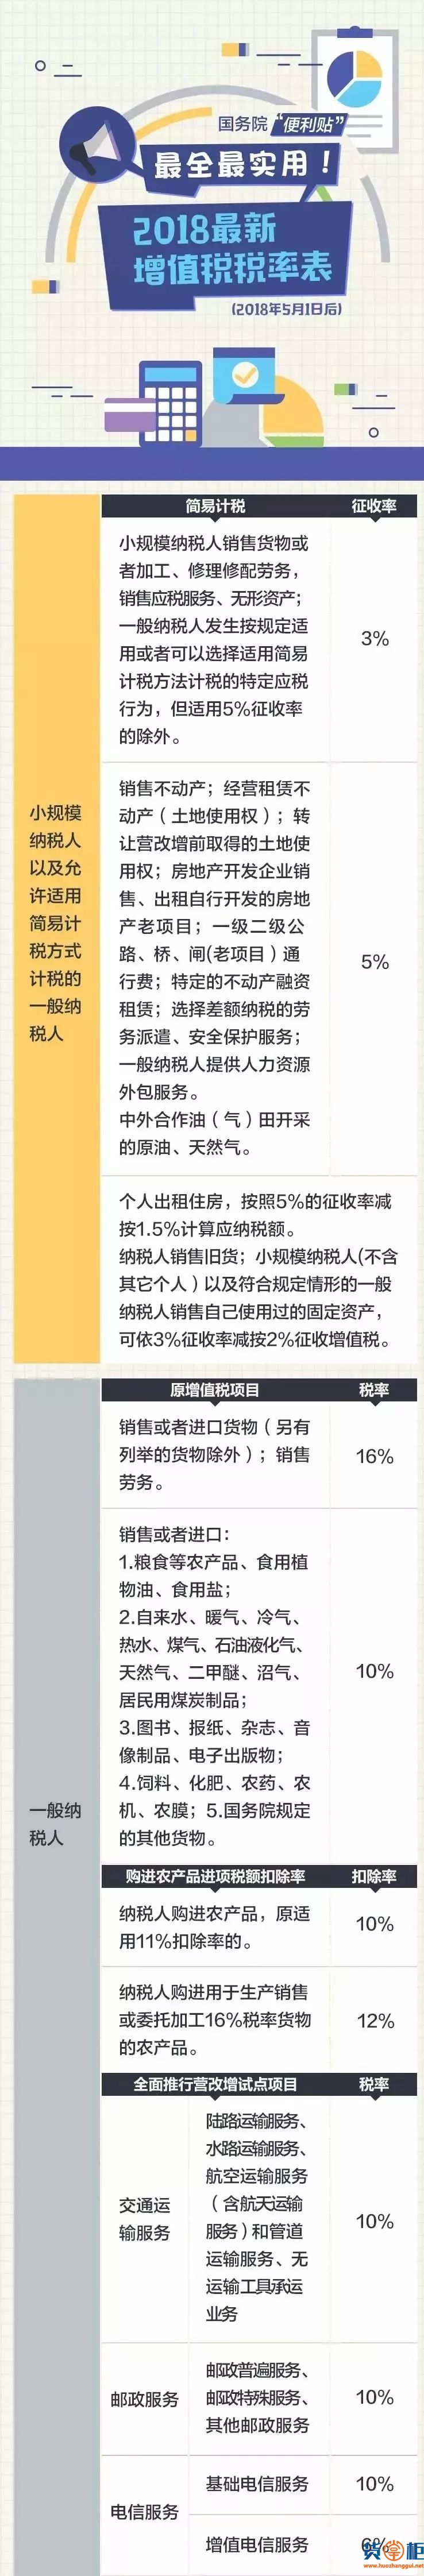 2018最新最全增值税税率表-货掌柜www.huozhanggui.net